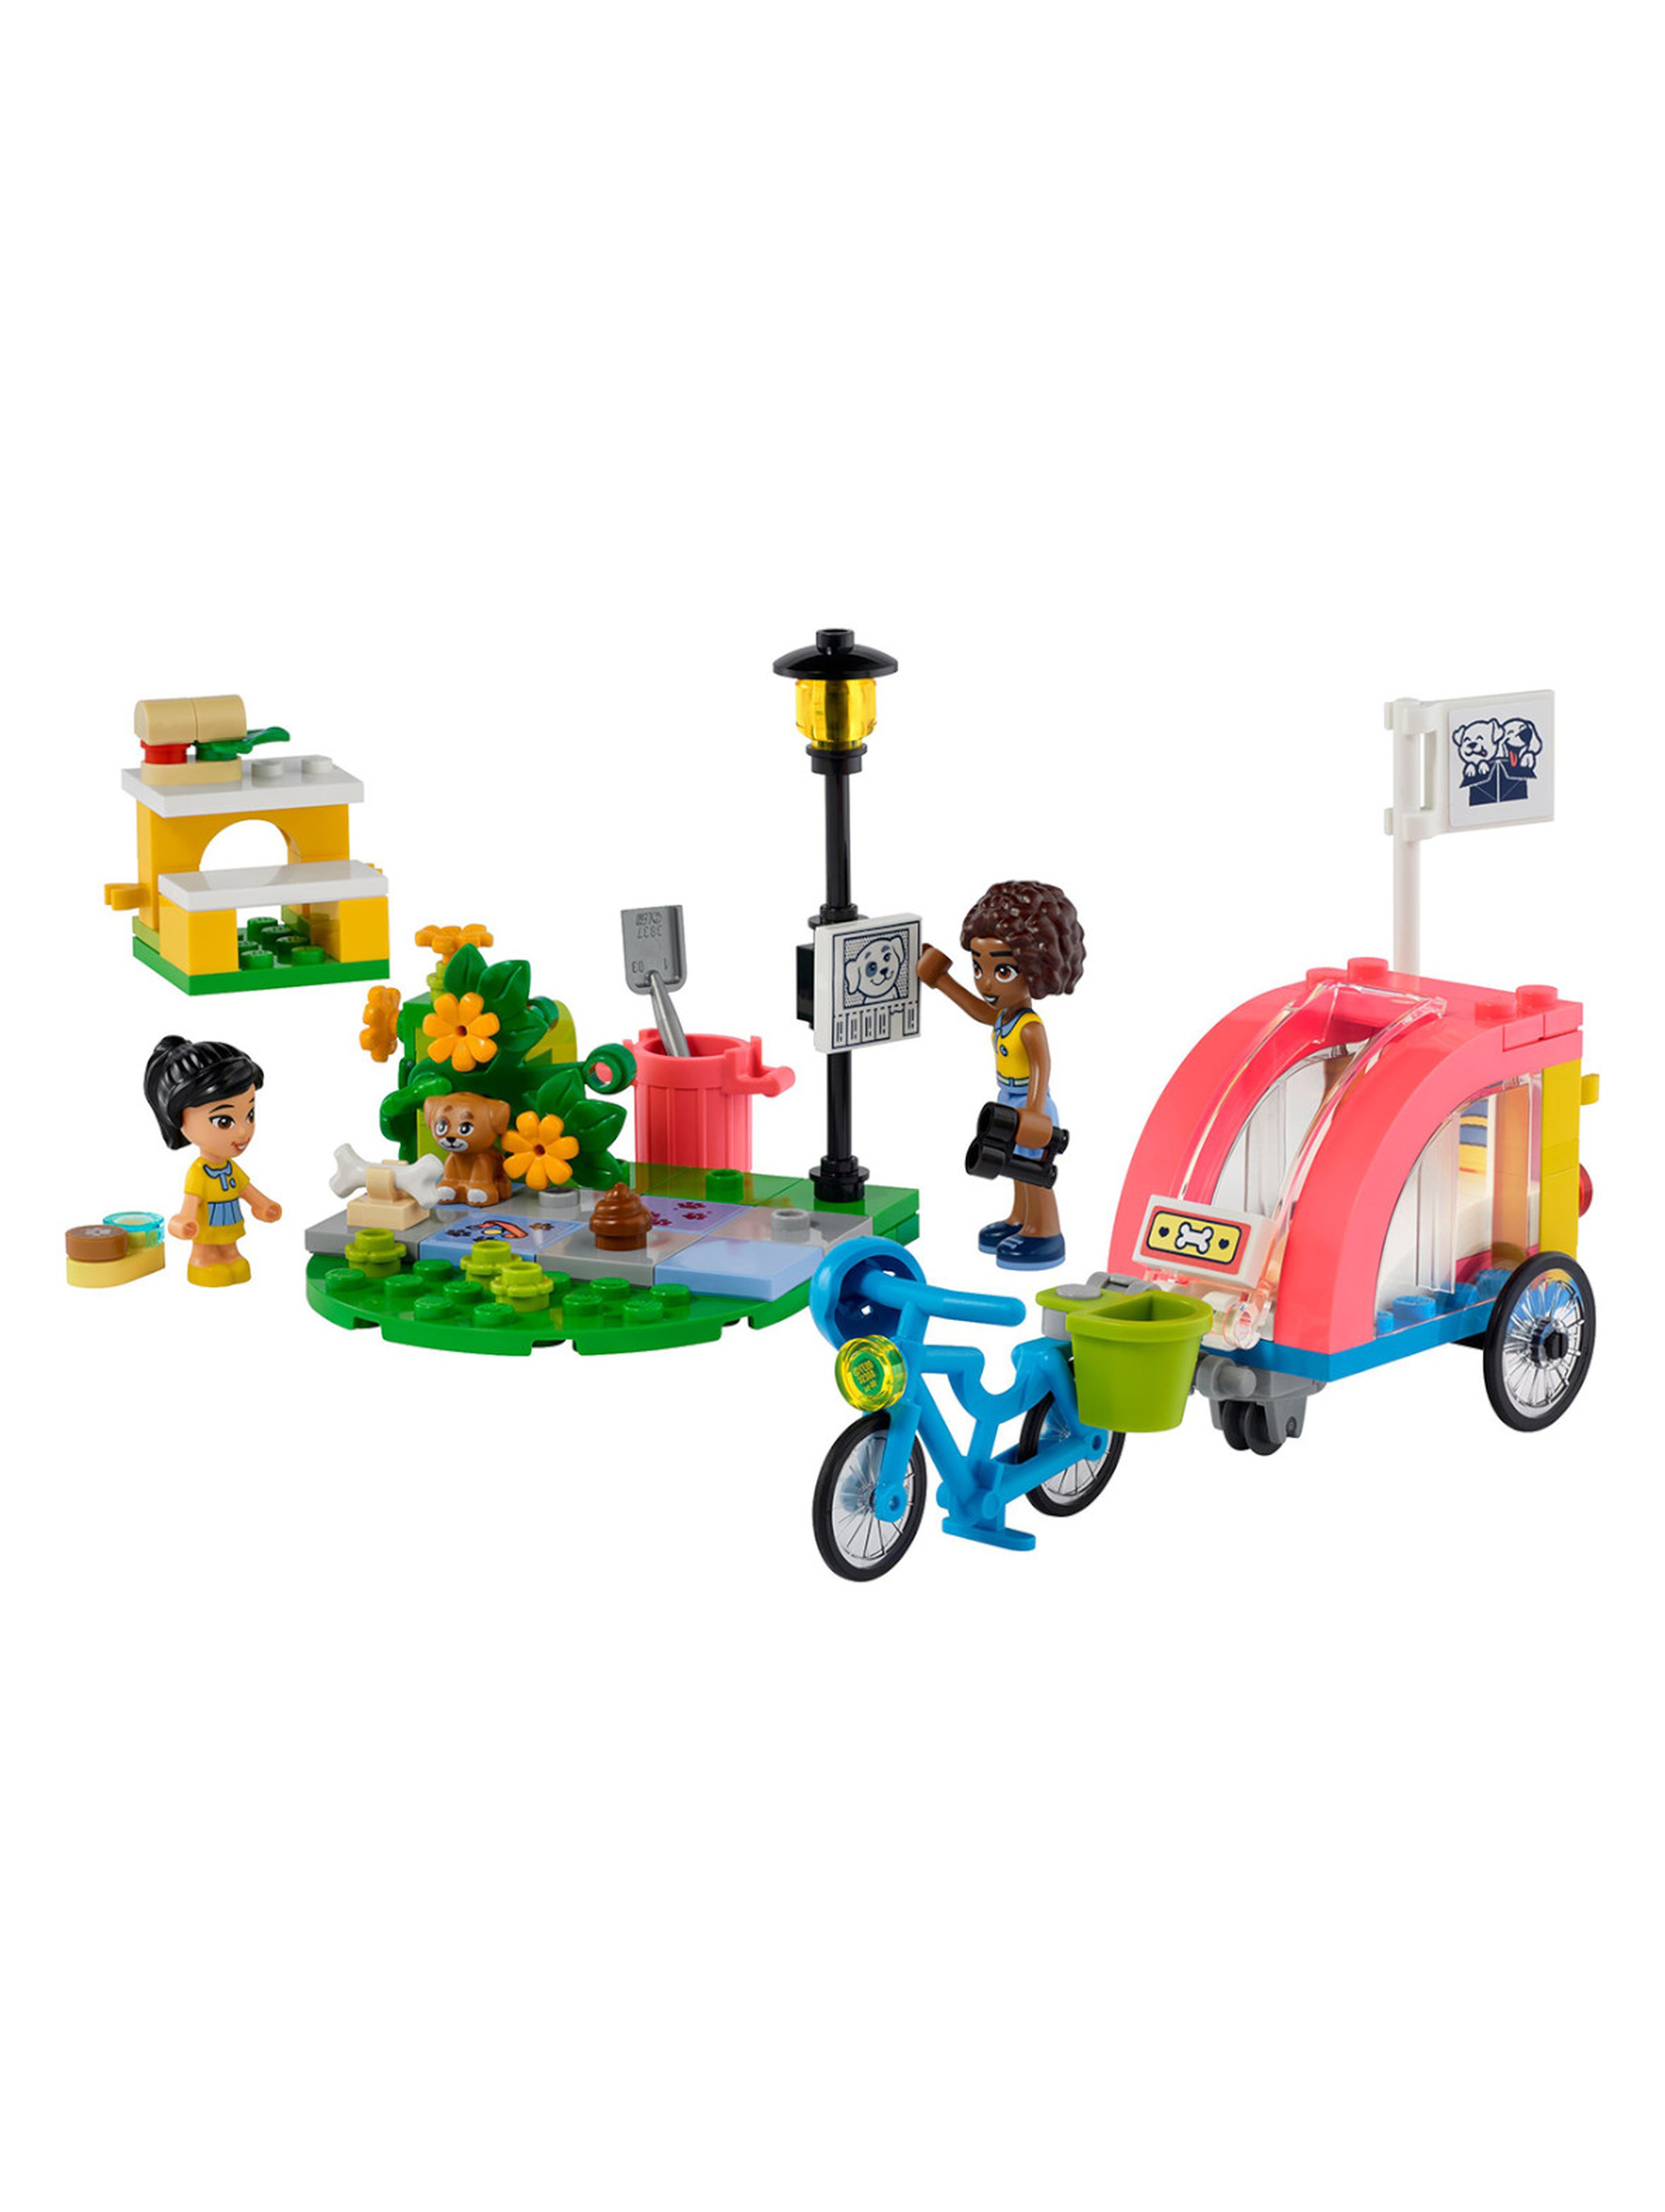 Klocki LEGO Friends 41738 Rower do ratowania psów - 125 elementów, wiek 6 +